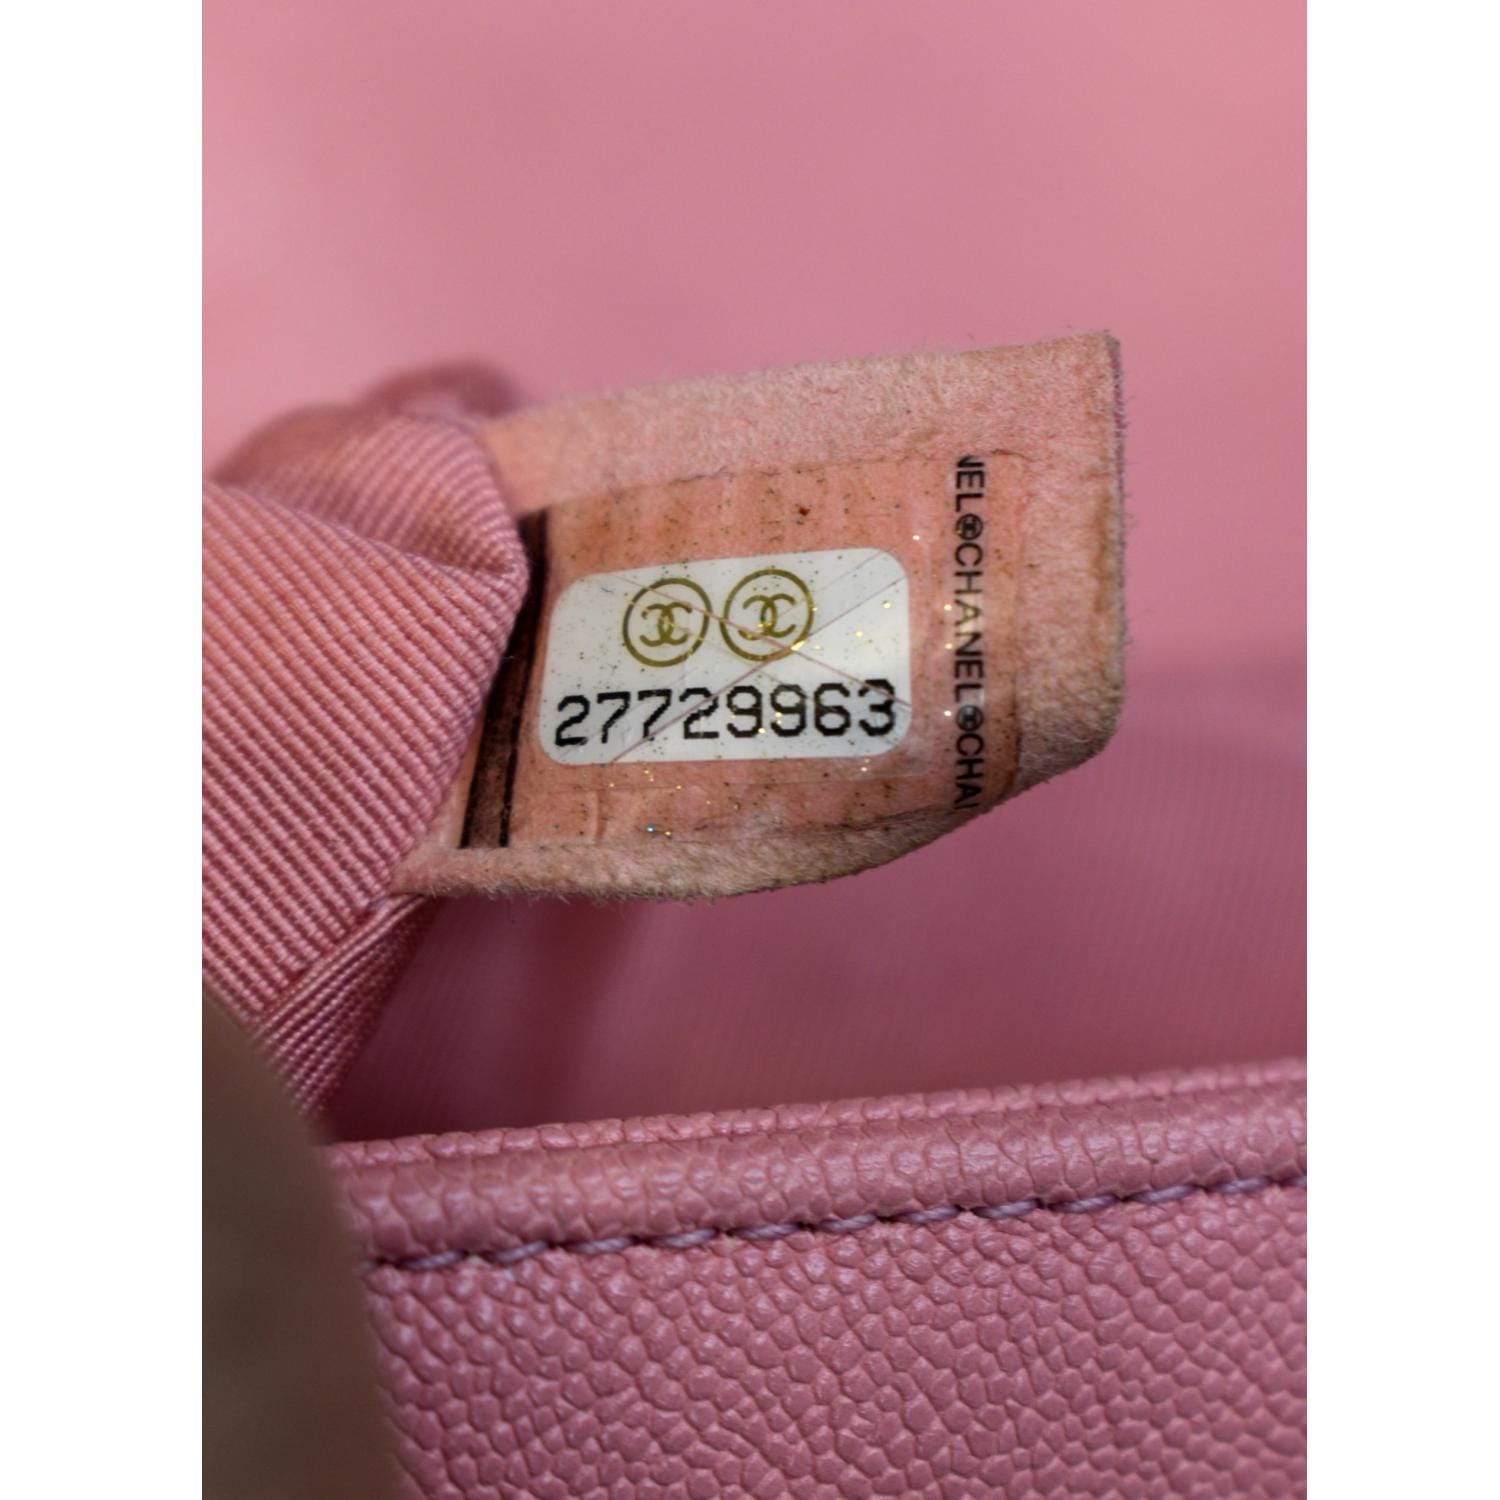 pink chanel bag vintage leather